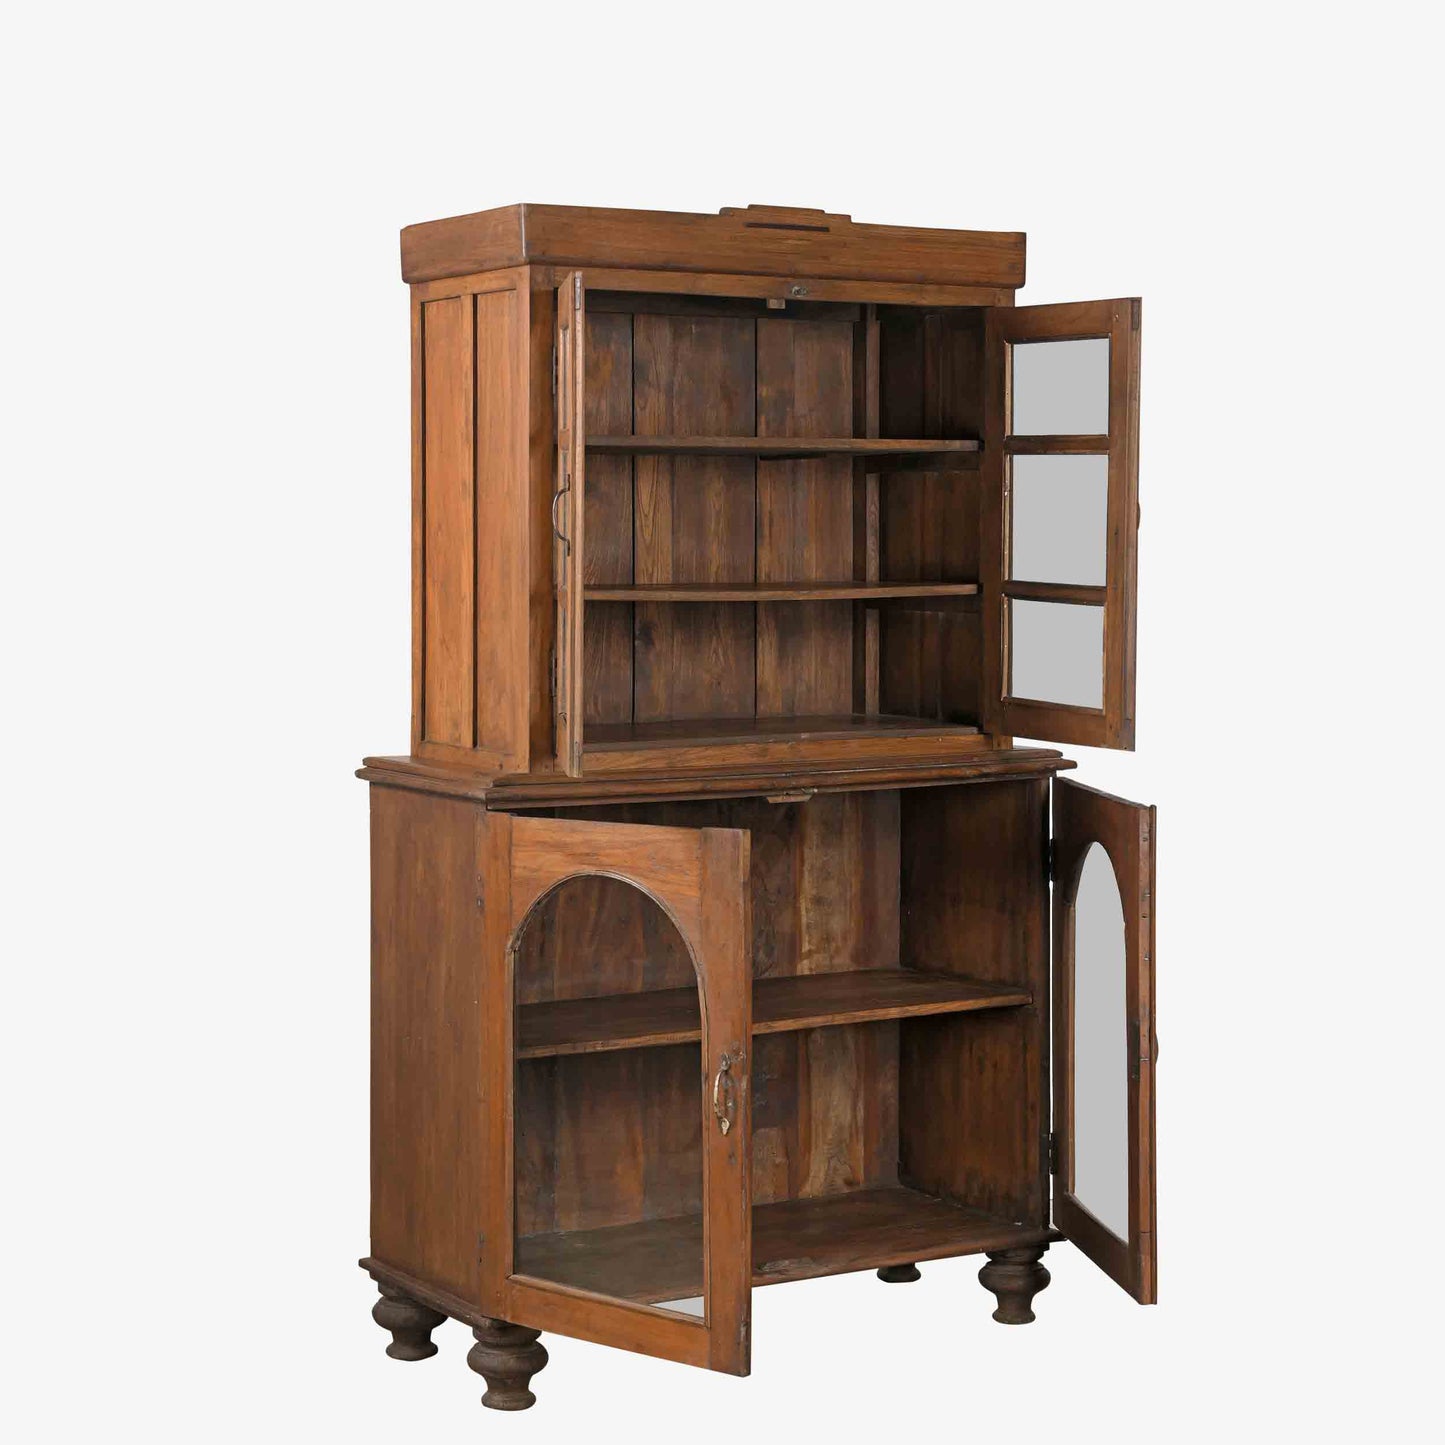 The Maddie Antique Display Dresser